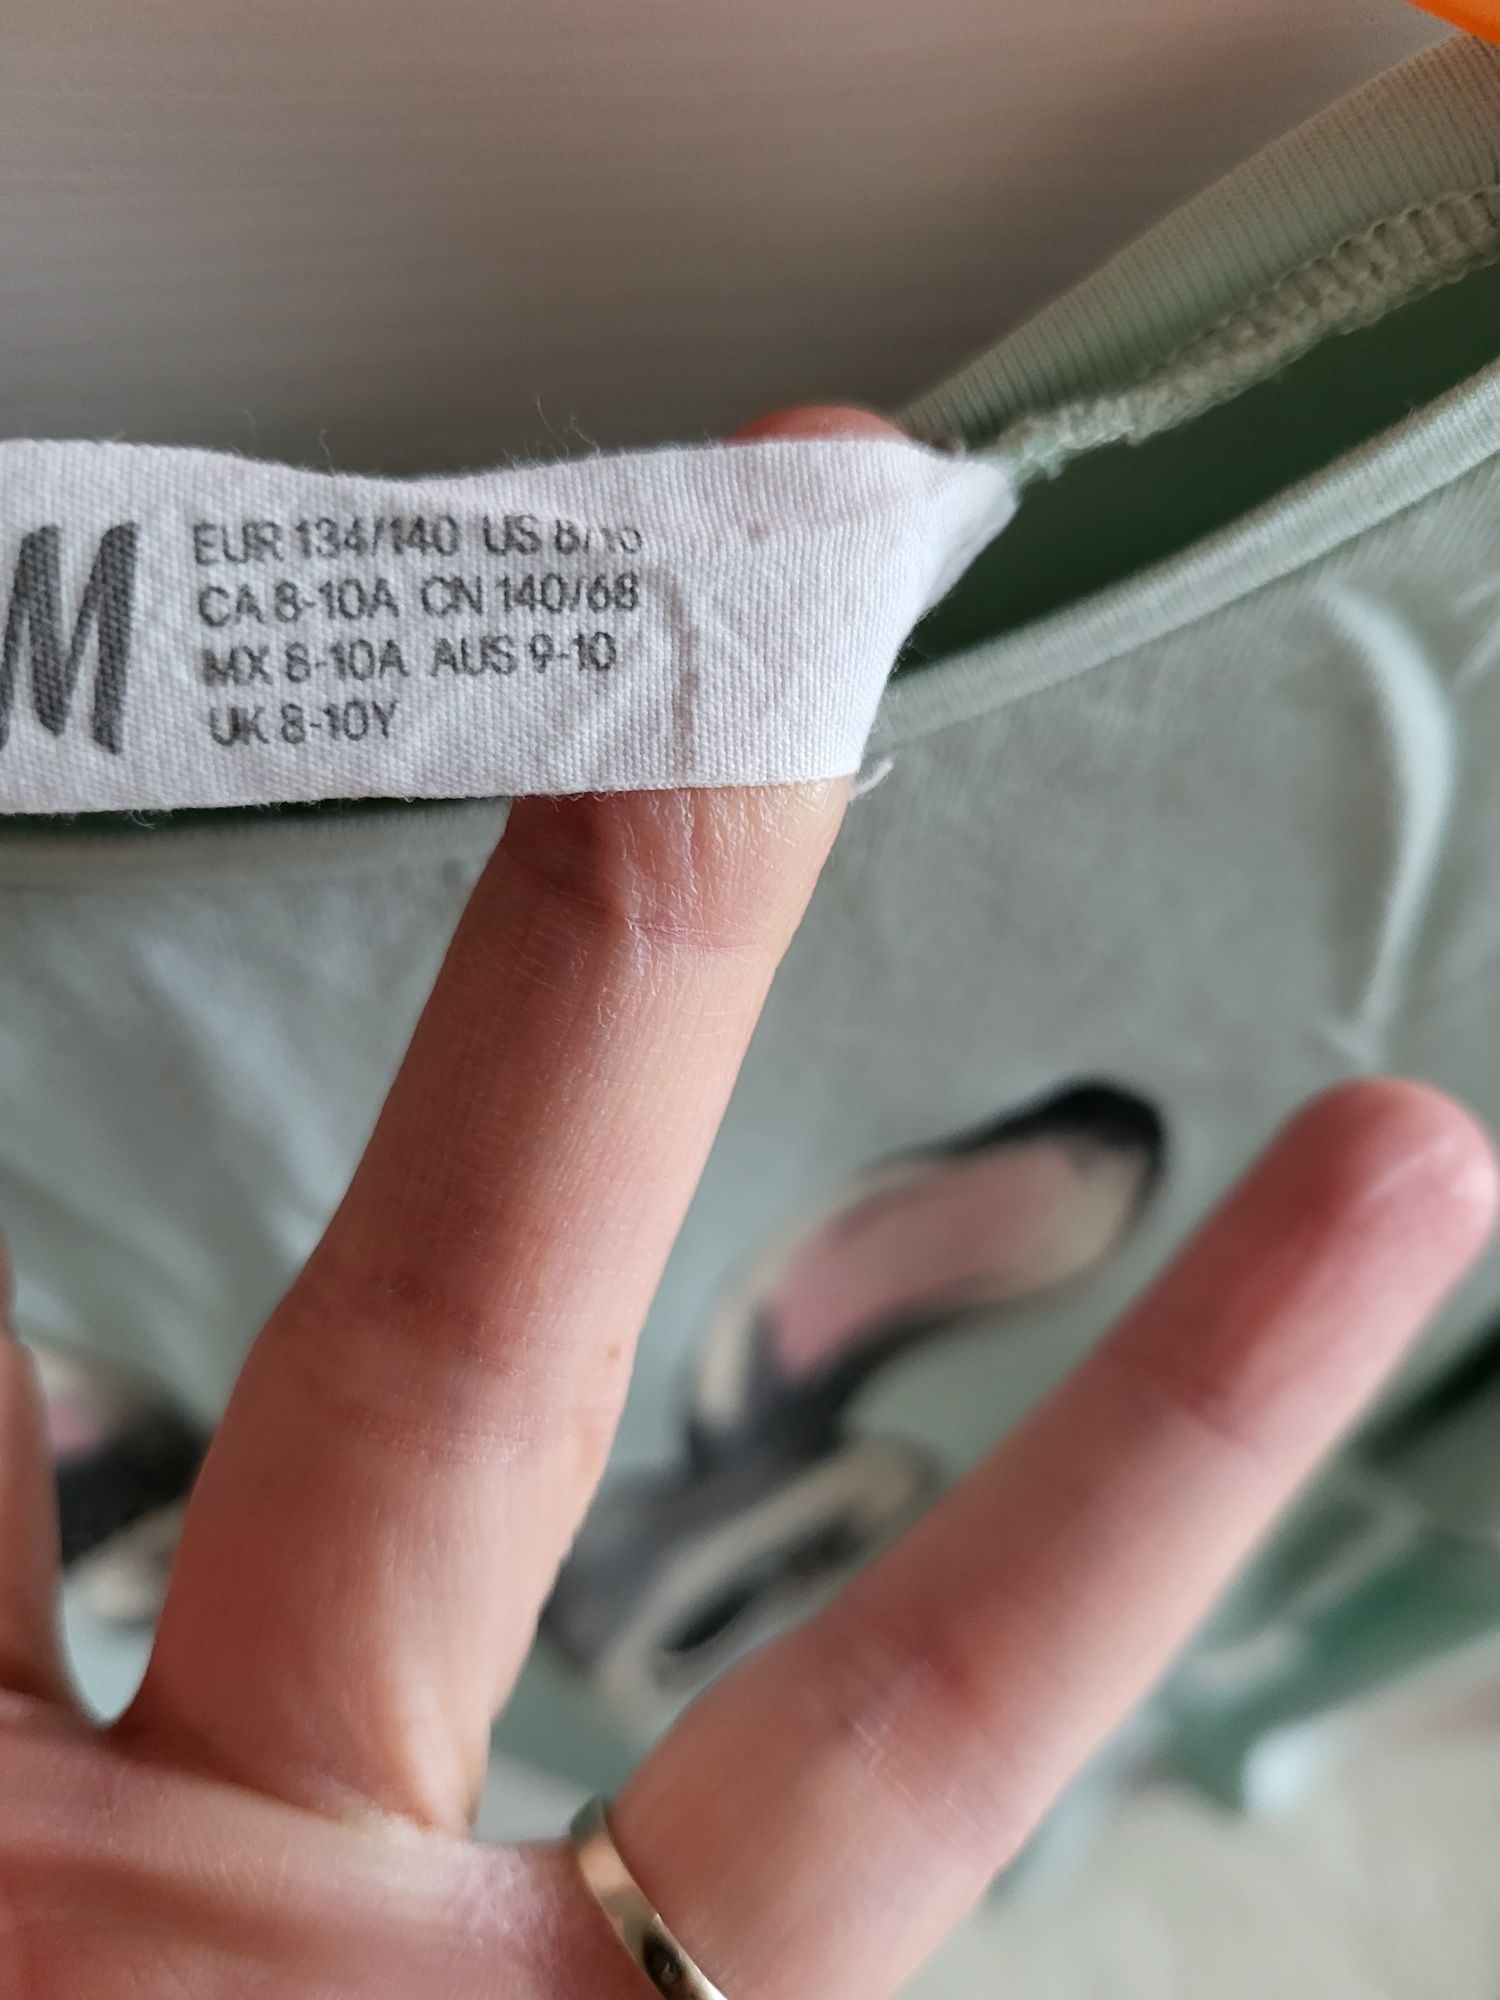 Bluzka długi rękaw H&M HM rozmiar 134/140 królik króliczek